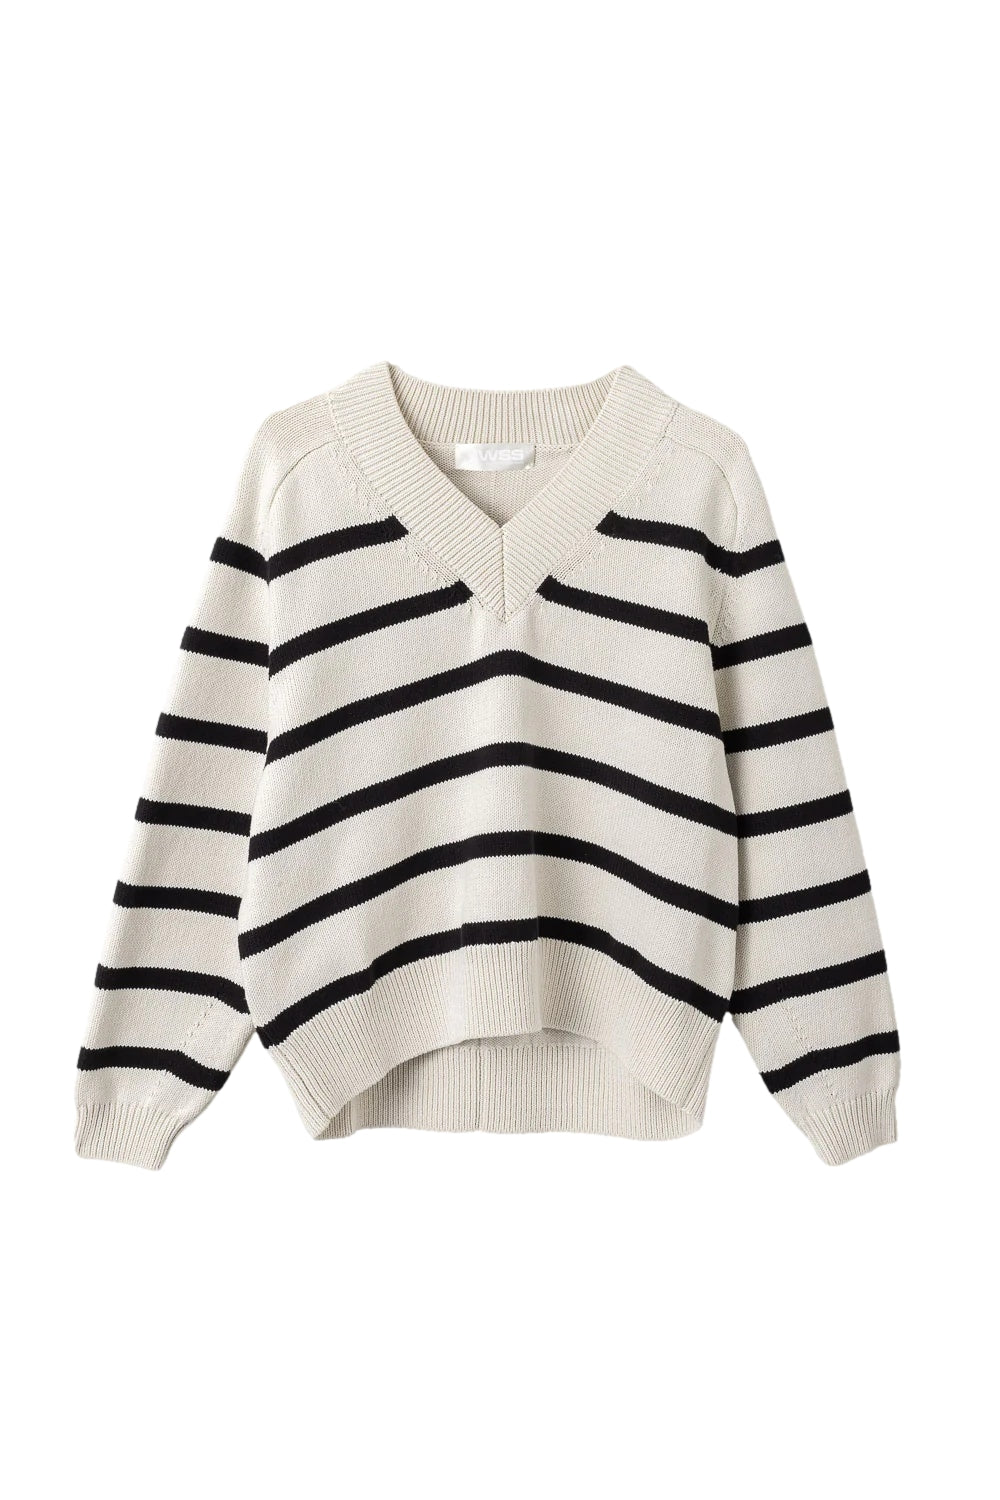 FWSS Bayside V-Neck Sweater Genser- Stripet - [shop.name]